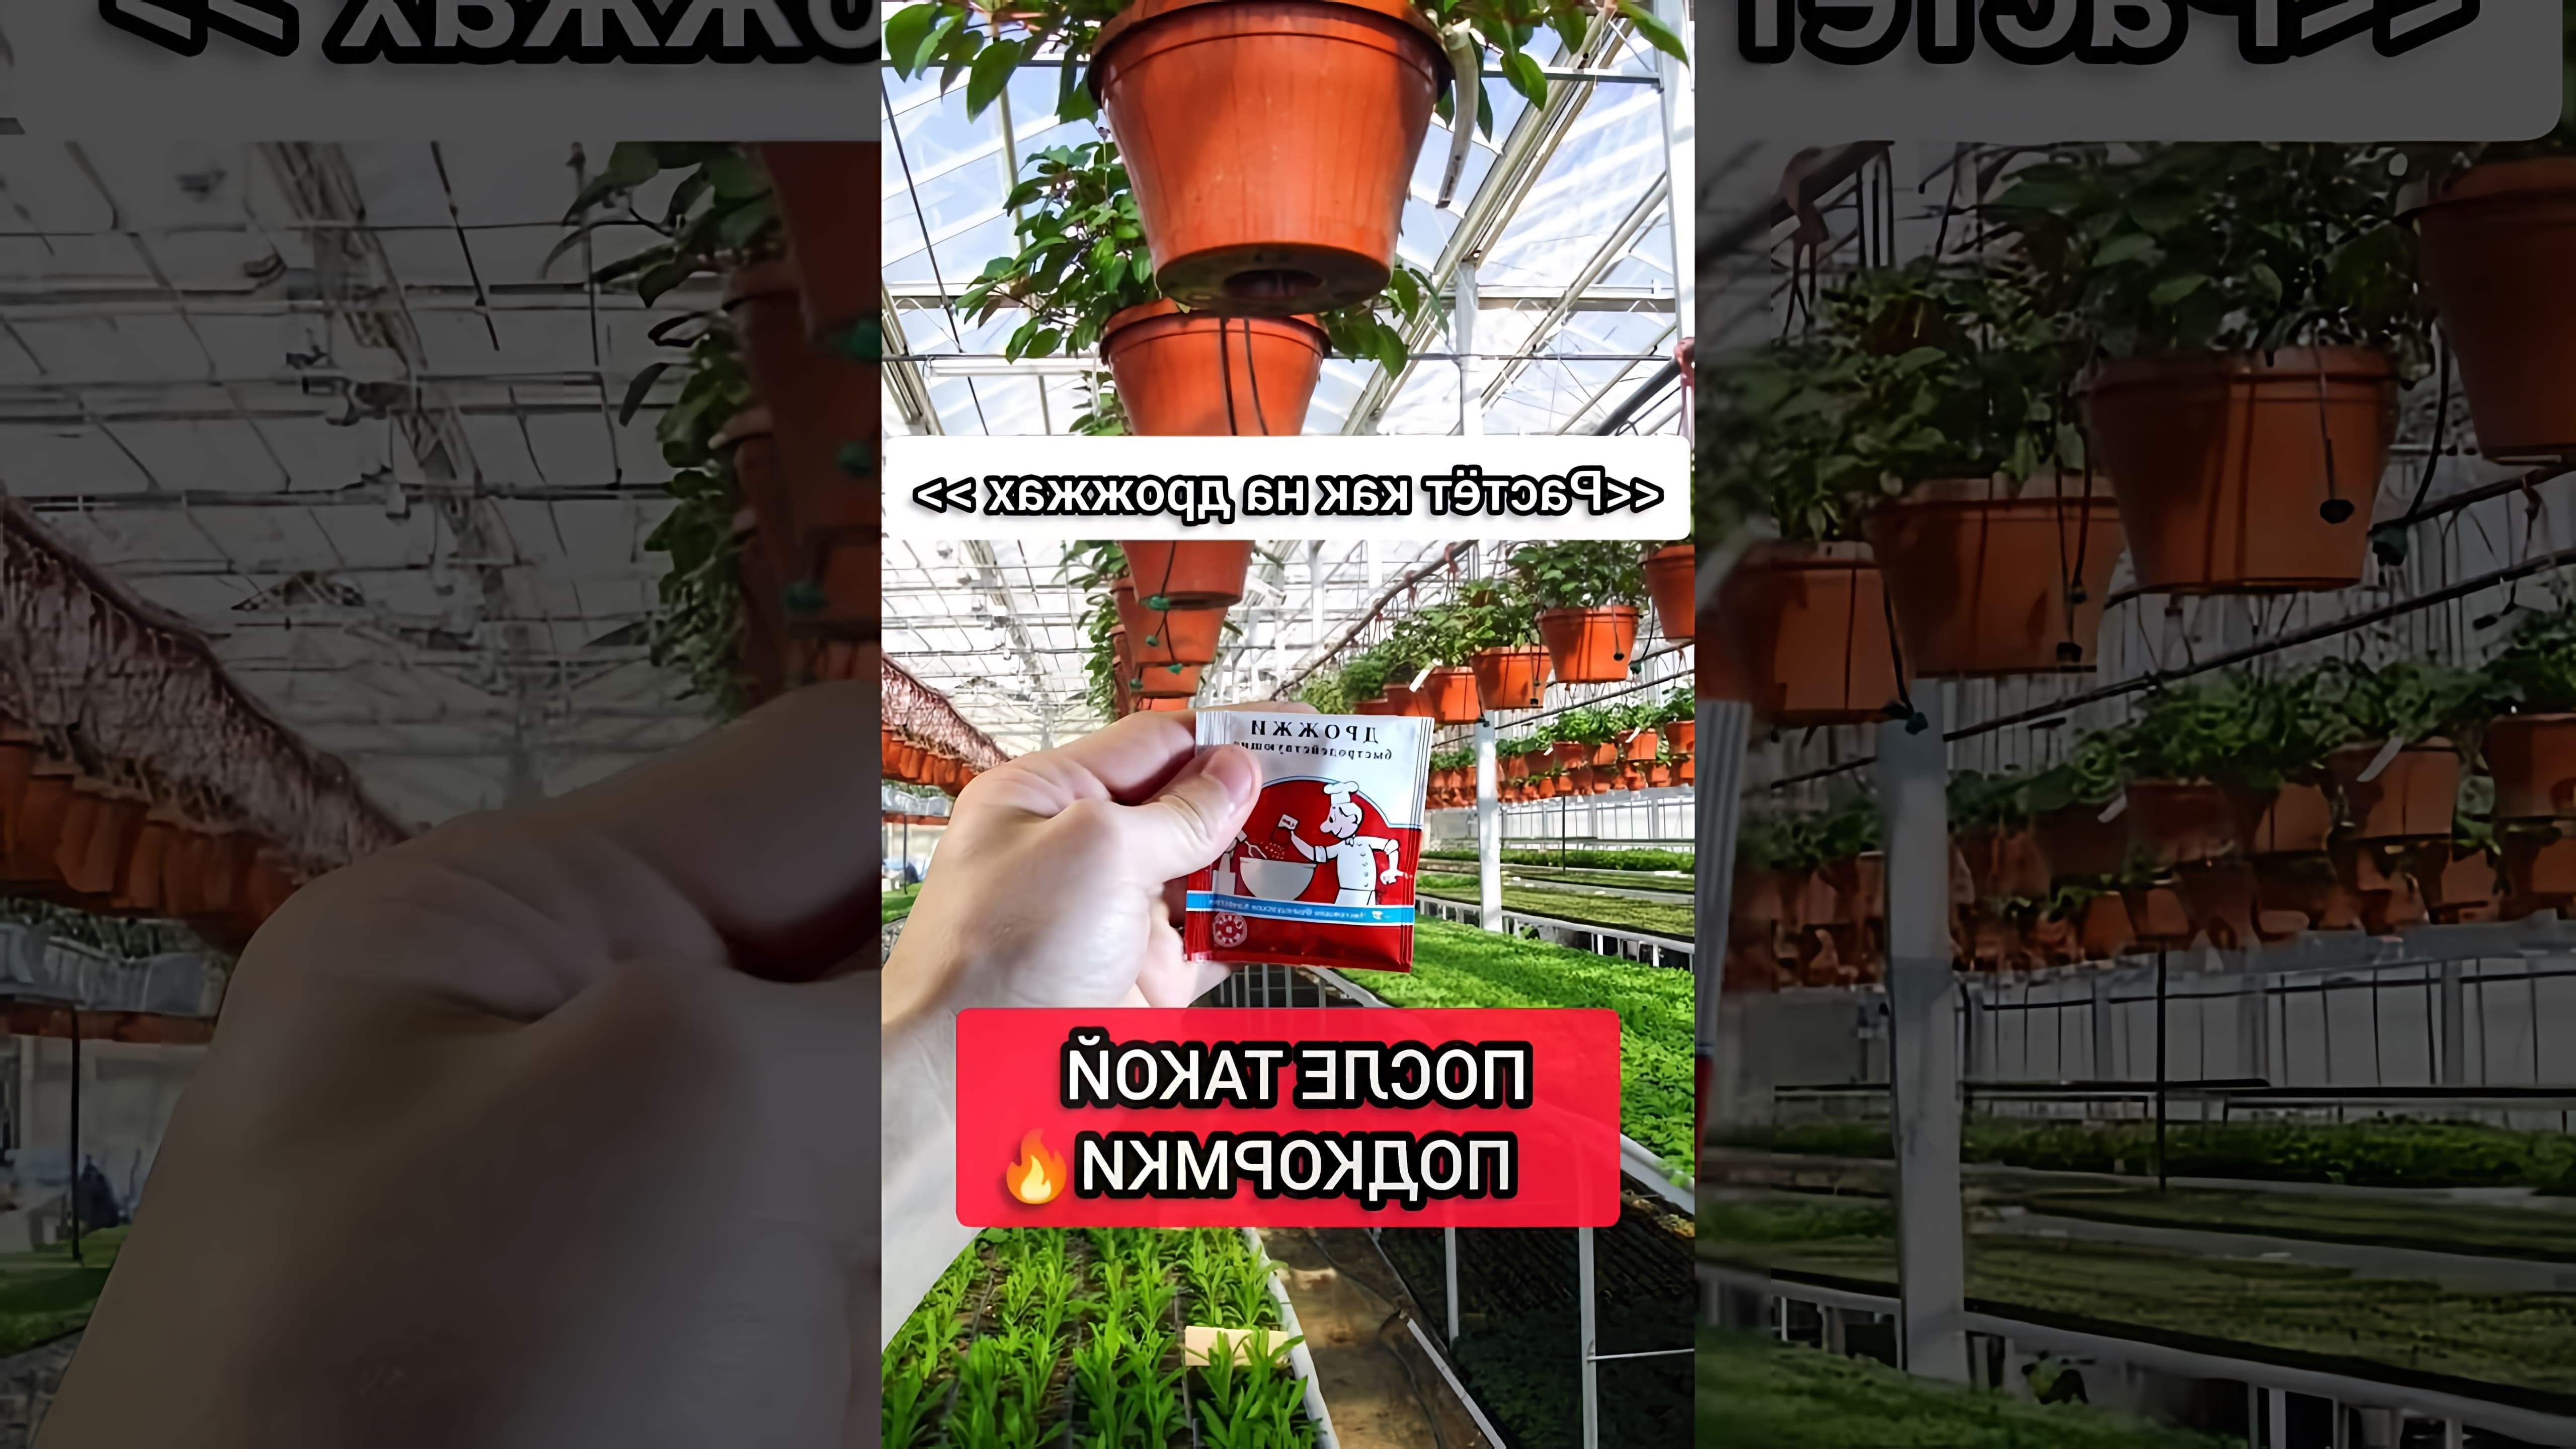 В этом видео рассказывается о бюджетной и эффективной подкормке для комнатных растений